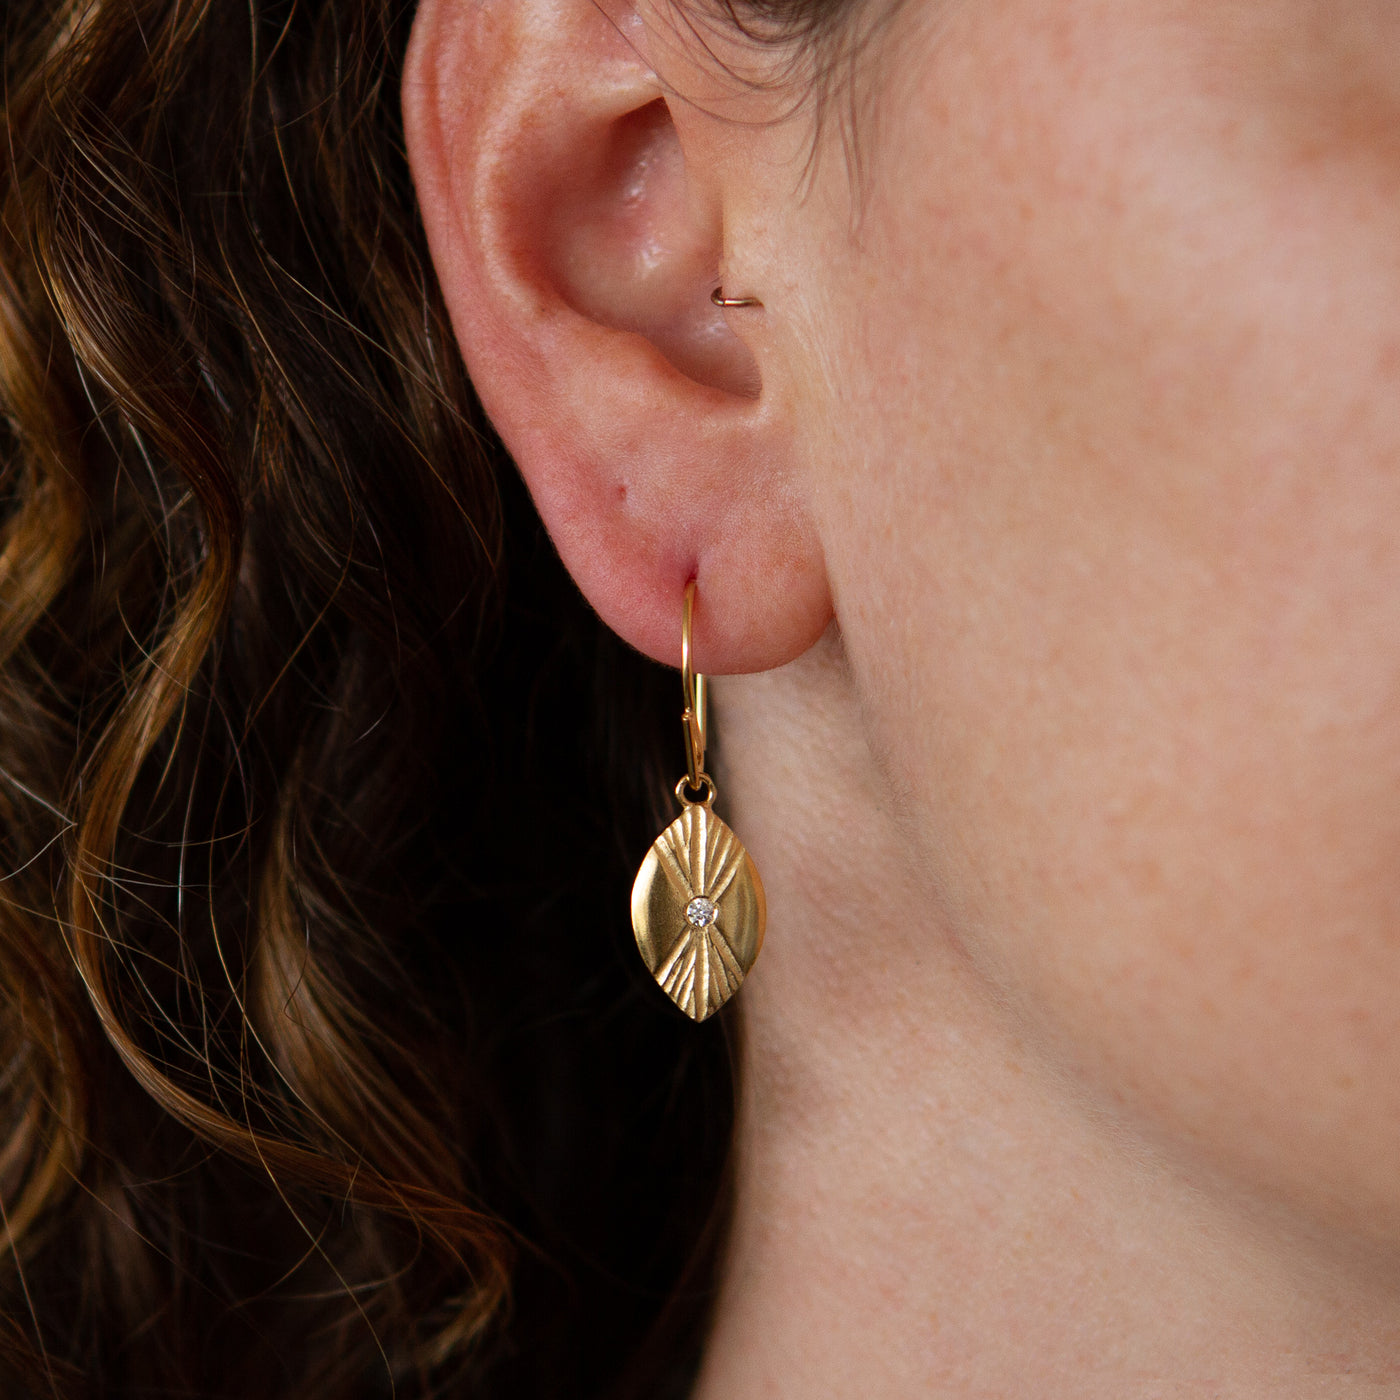 Vermeil Lumens Eye Dangle Earrings with diamond centers by Corey Egan on an ear